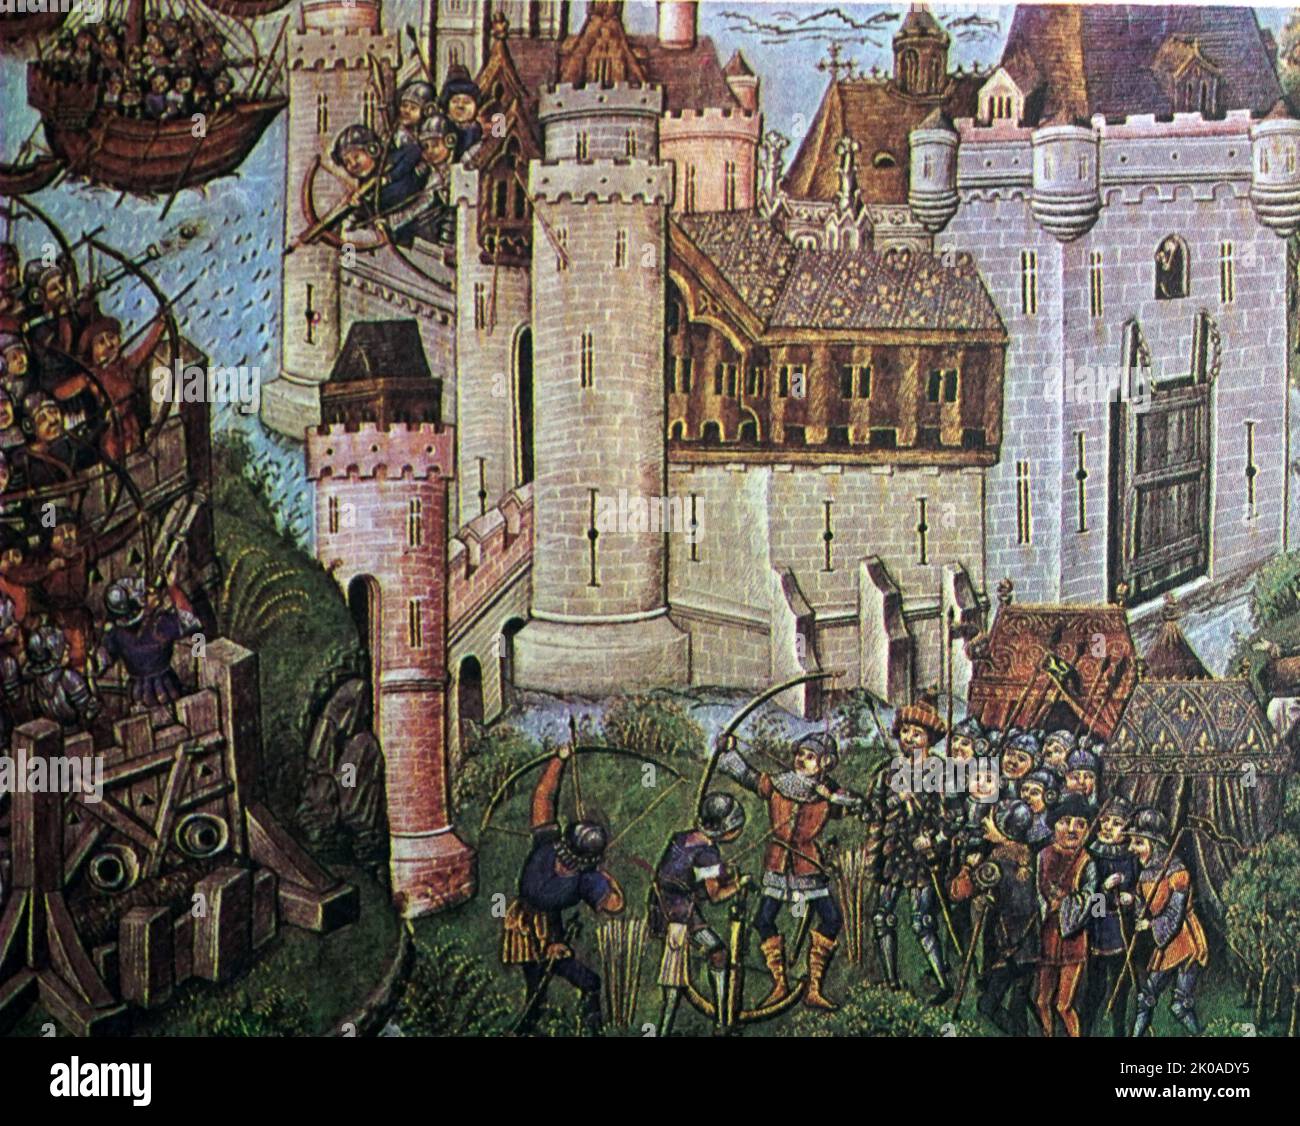 Le siège du château en 1377, pendant la guerre de cent ans. Miniature du 15th siècle Banque D'Images